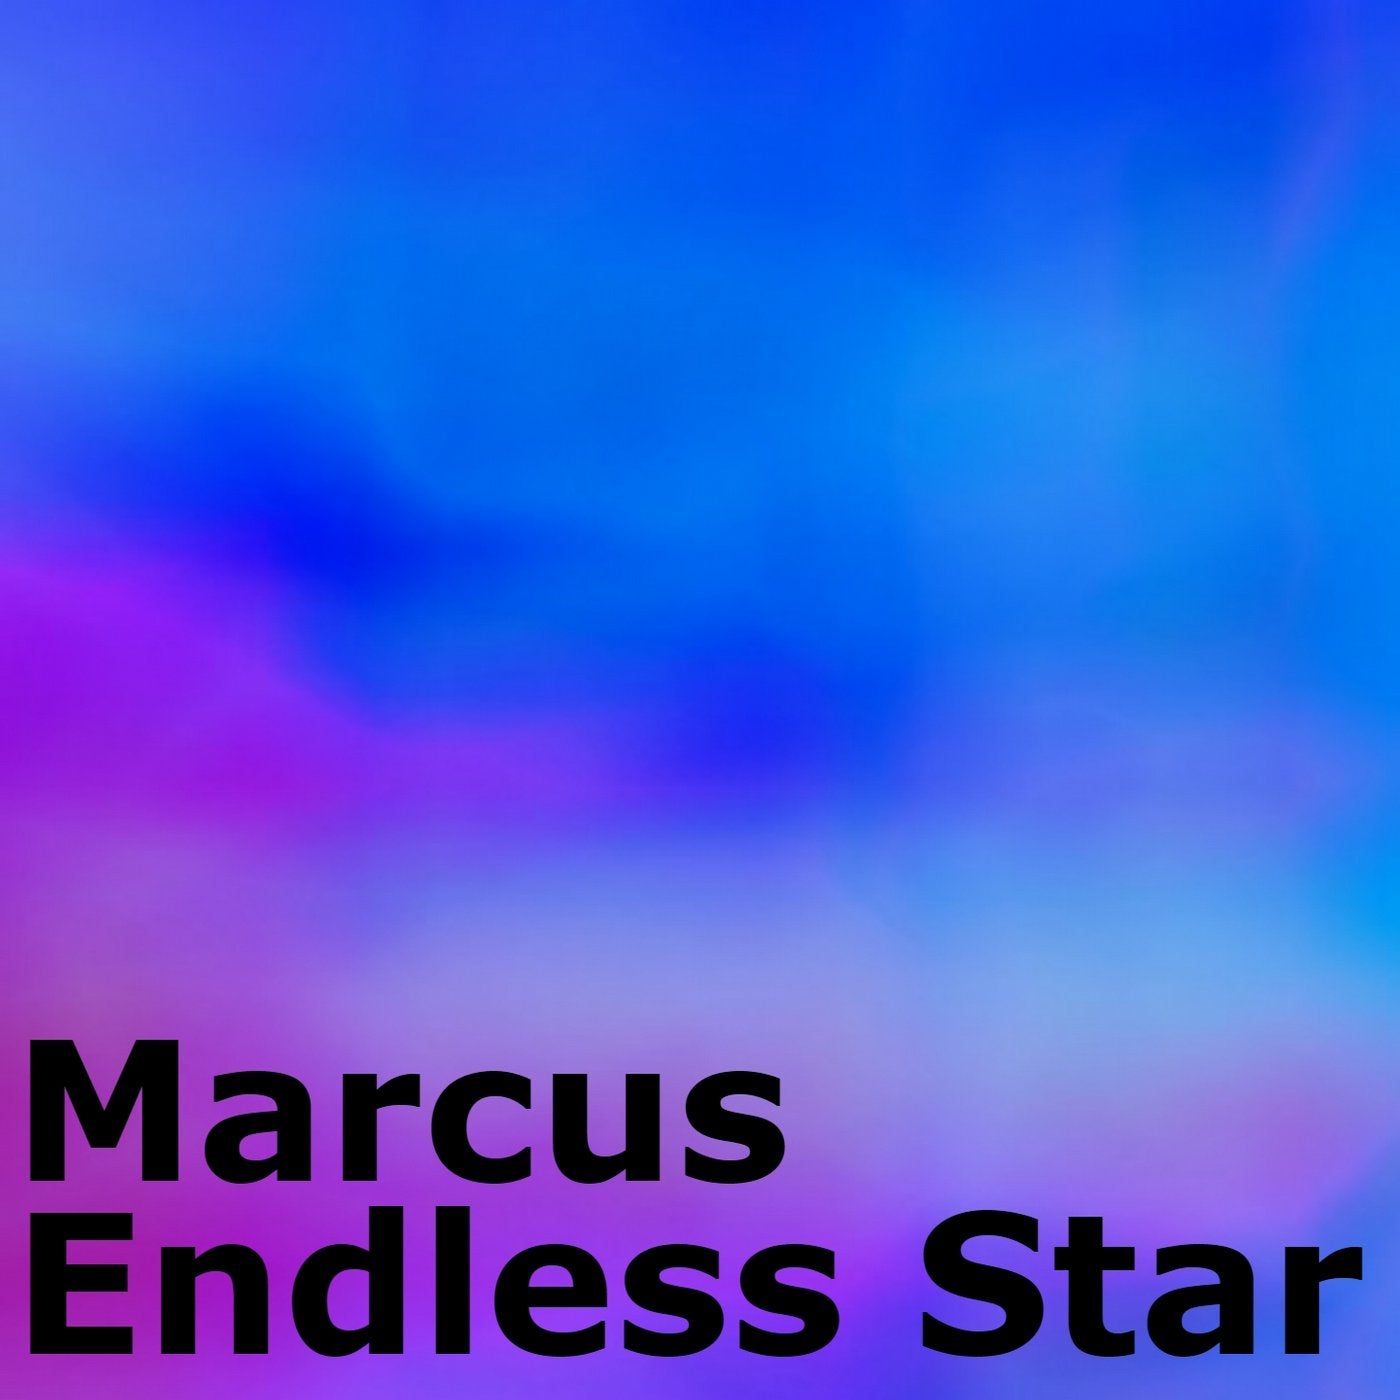 Endless Star